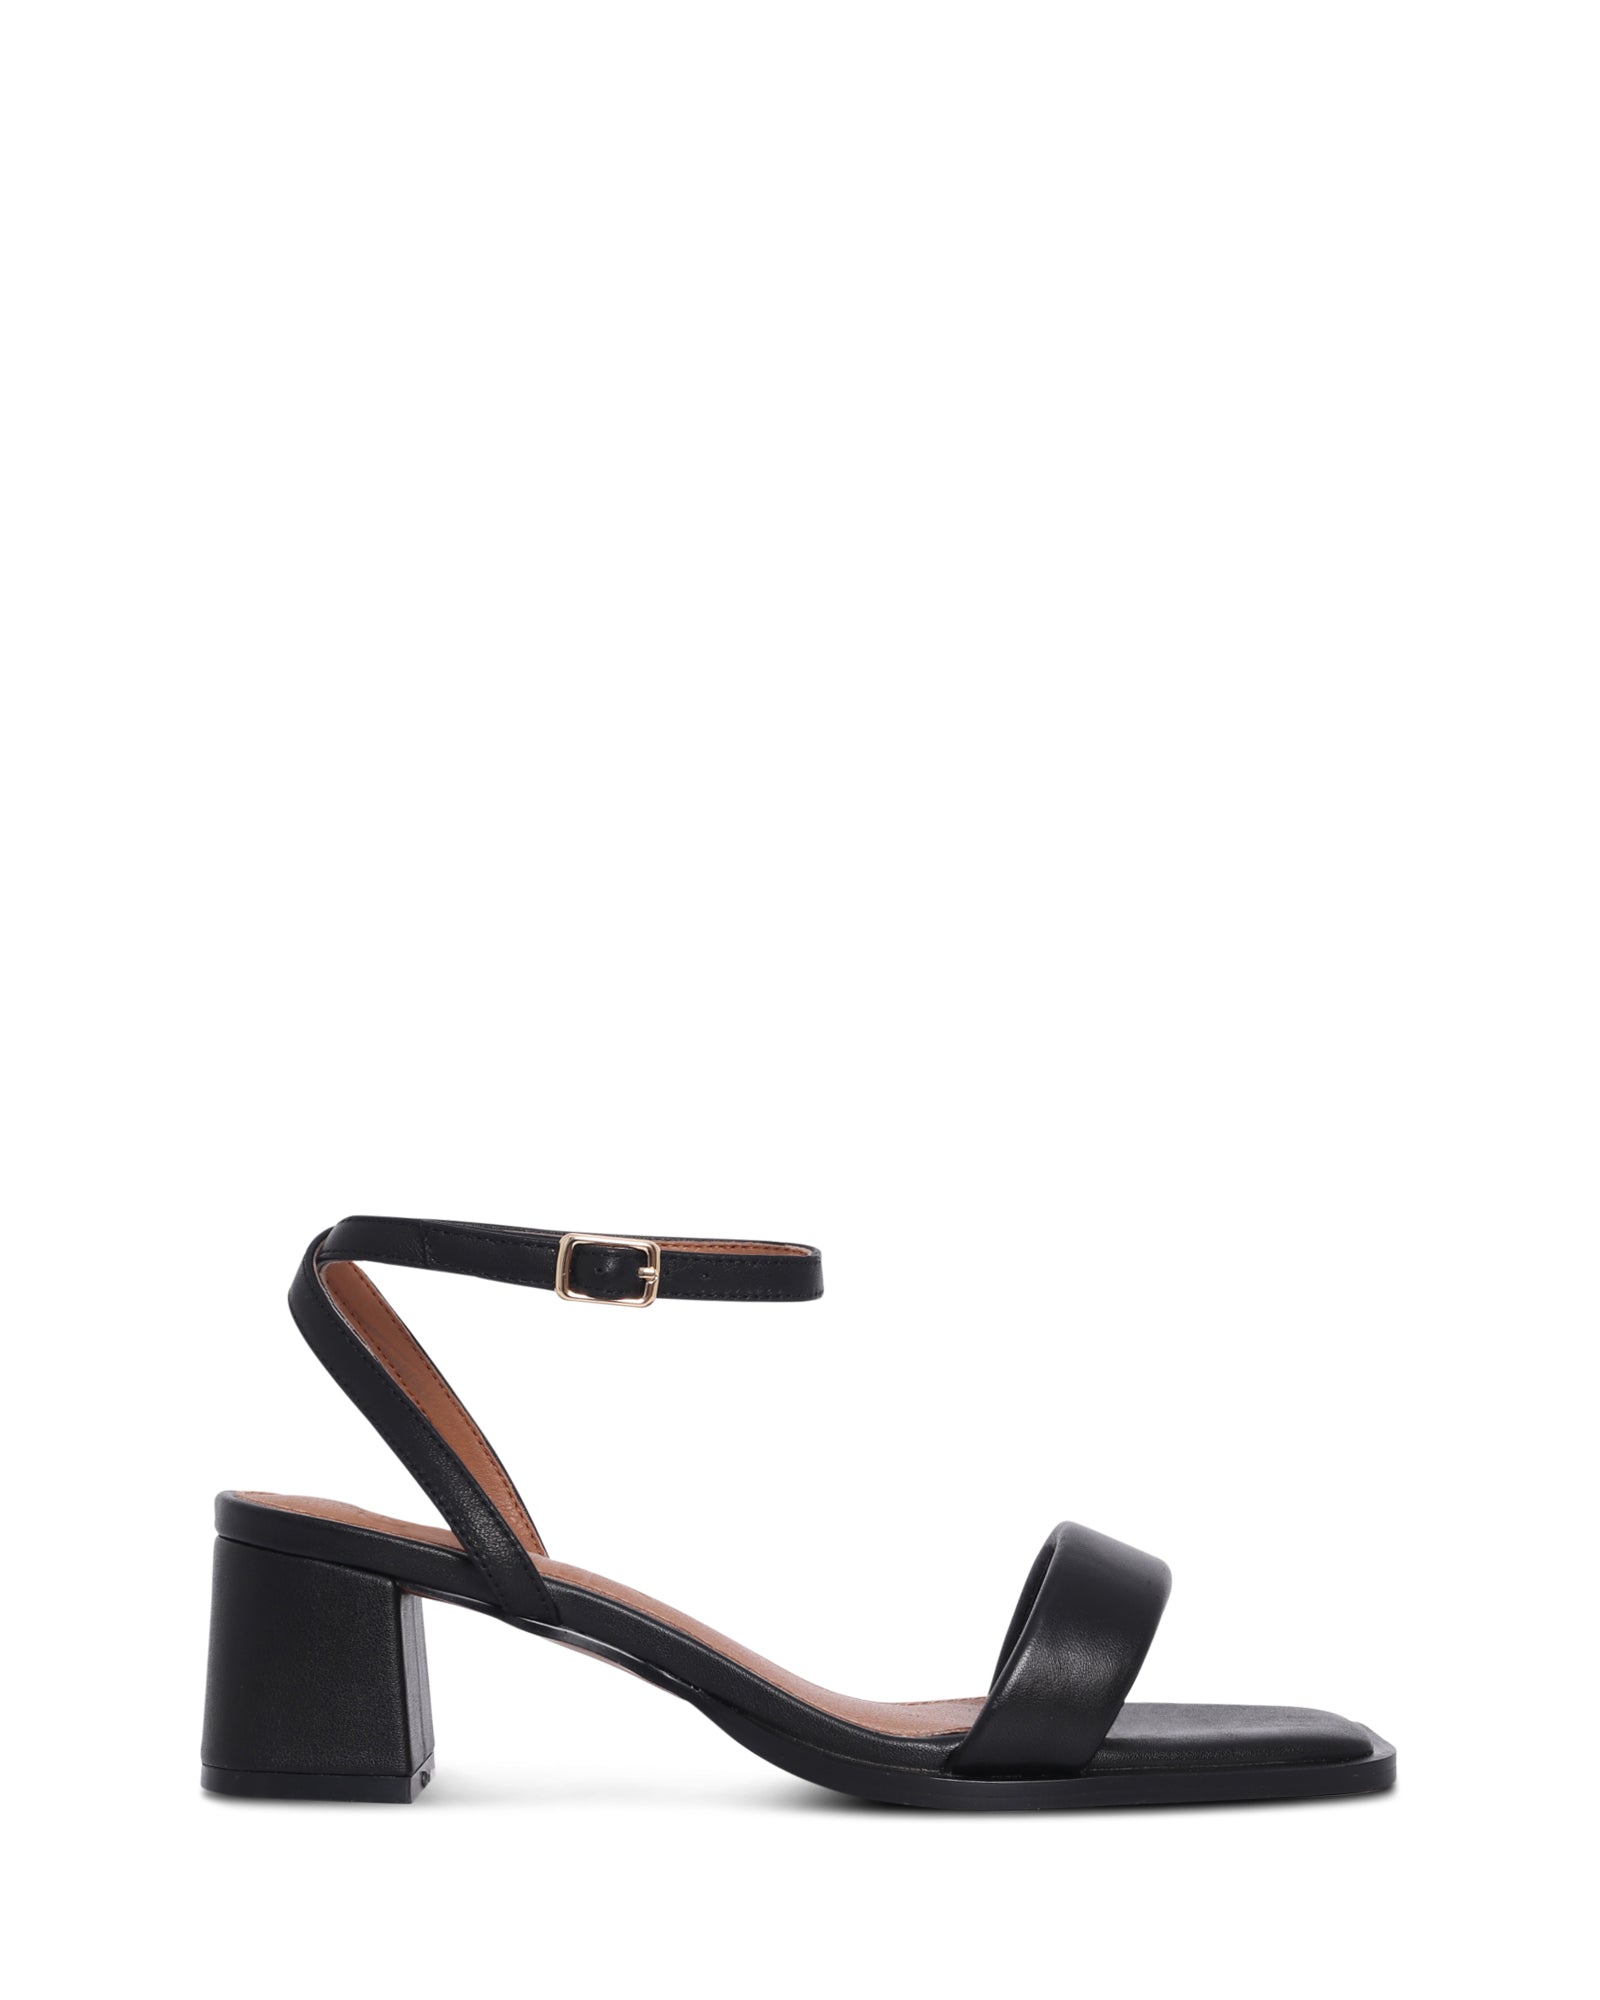 Puglia Black 5cm Low Heel